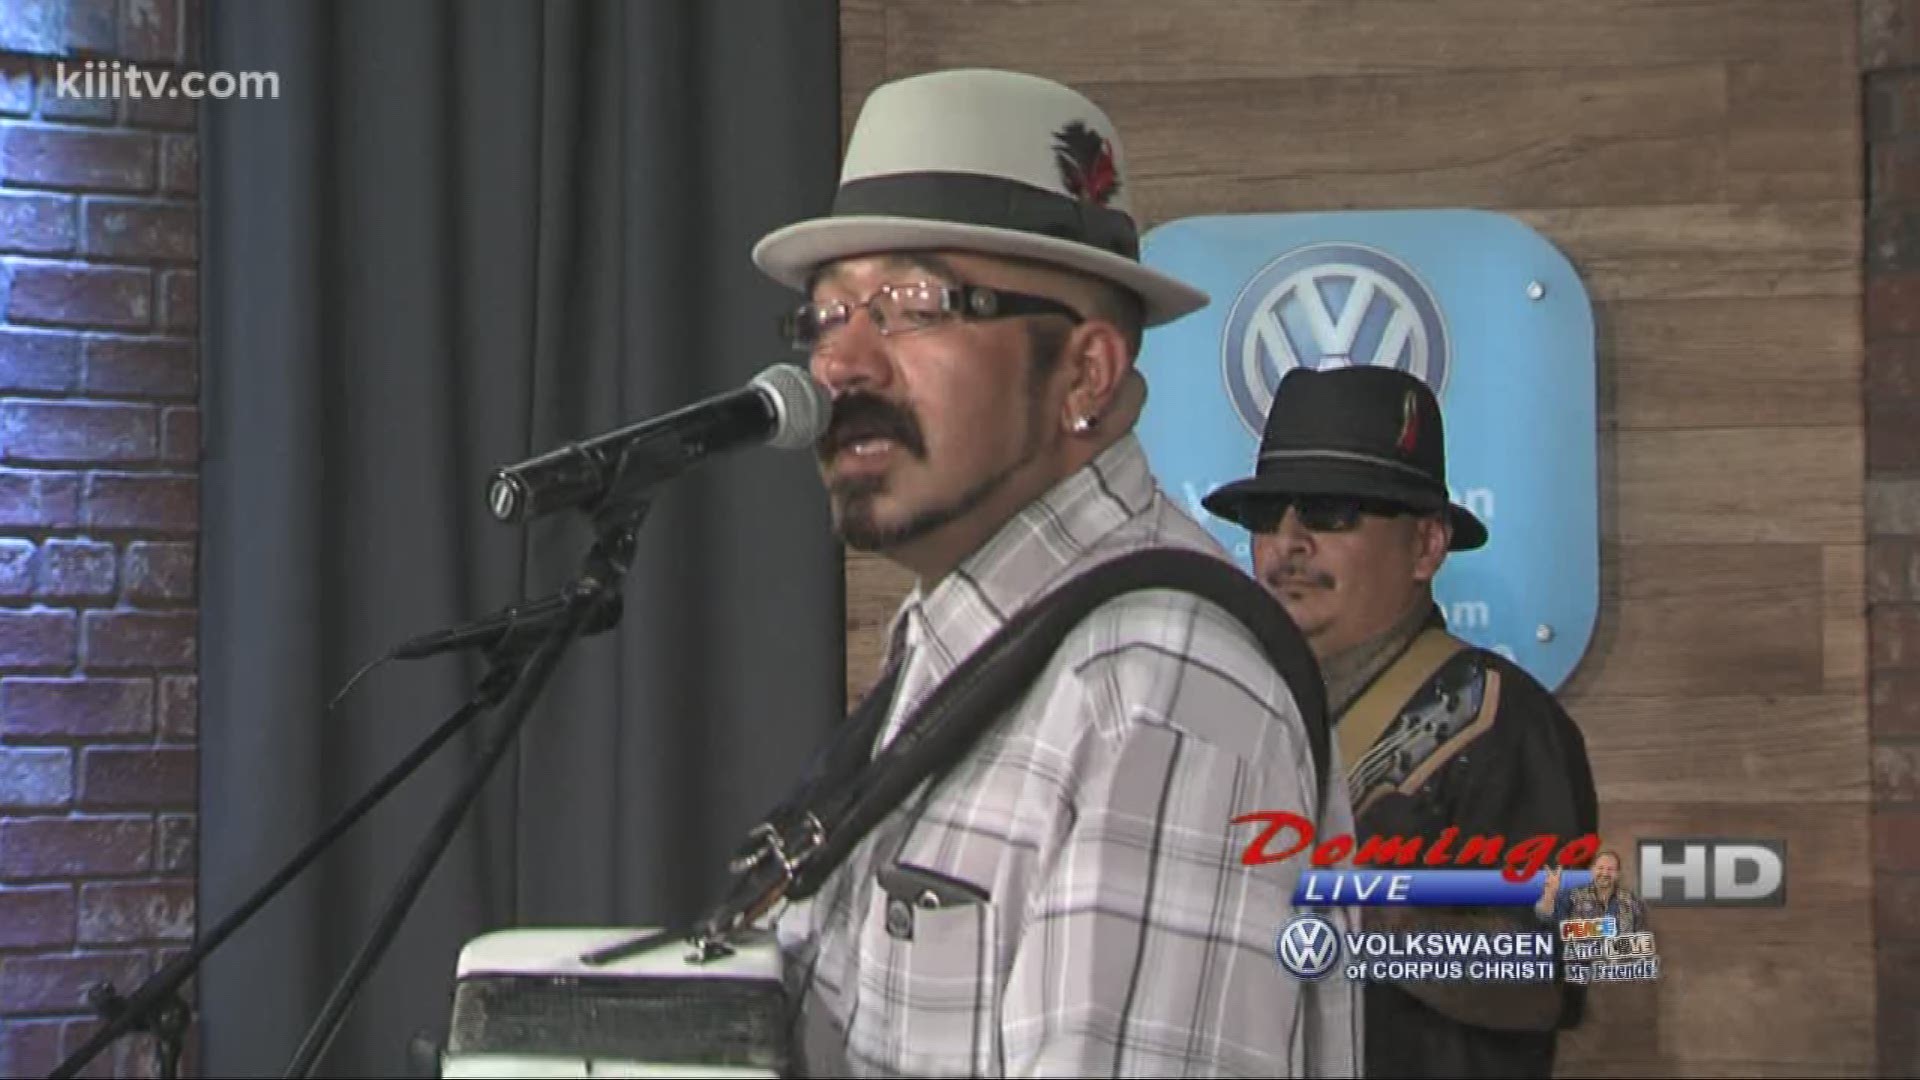 Juaquin Chavez Y Los Conjunto Boys performing "Y Ahora No Encuerntras" on Domingo Live.